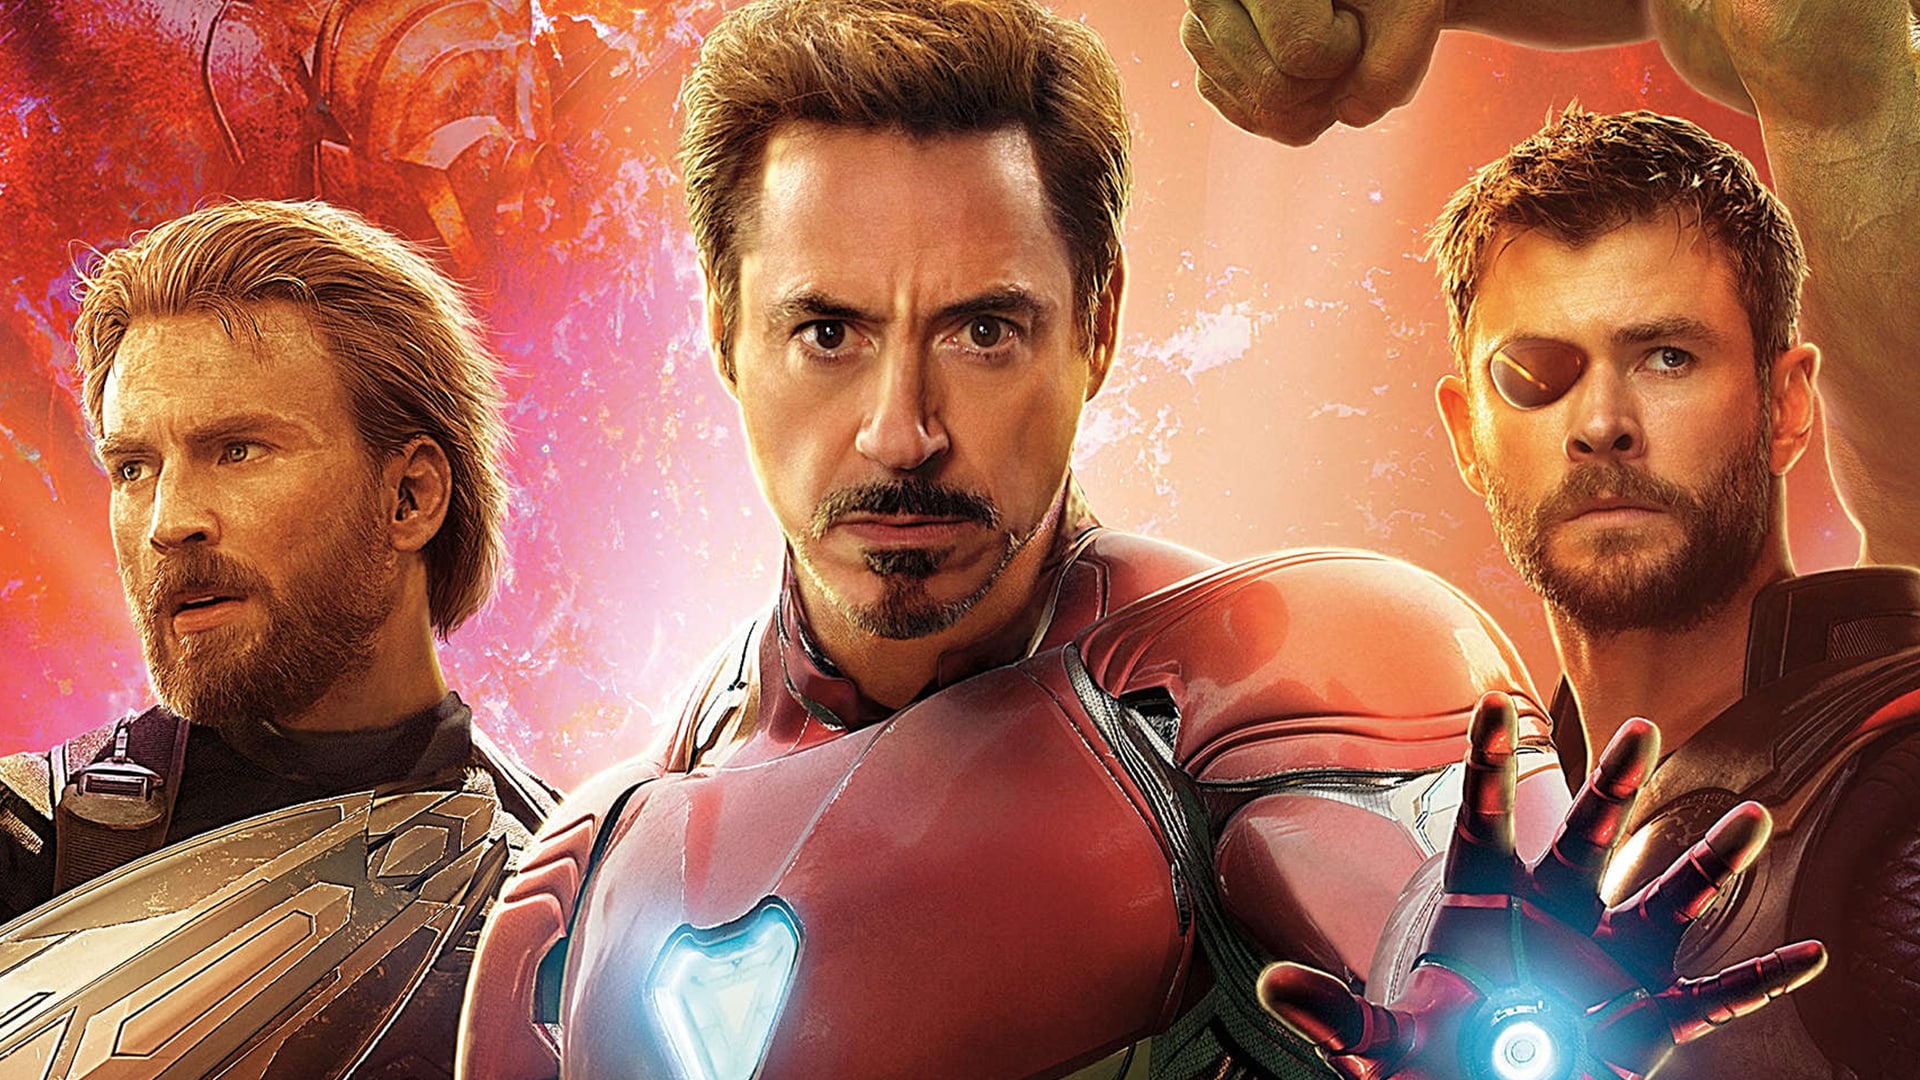 Herci z Avengers: Infinity War nemajú dovolené vidieť film pred svetovou premiérou!